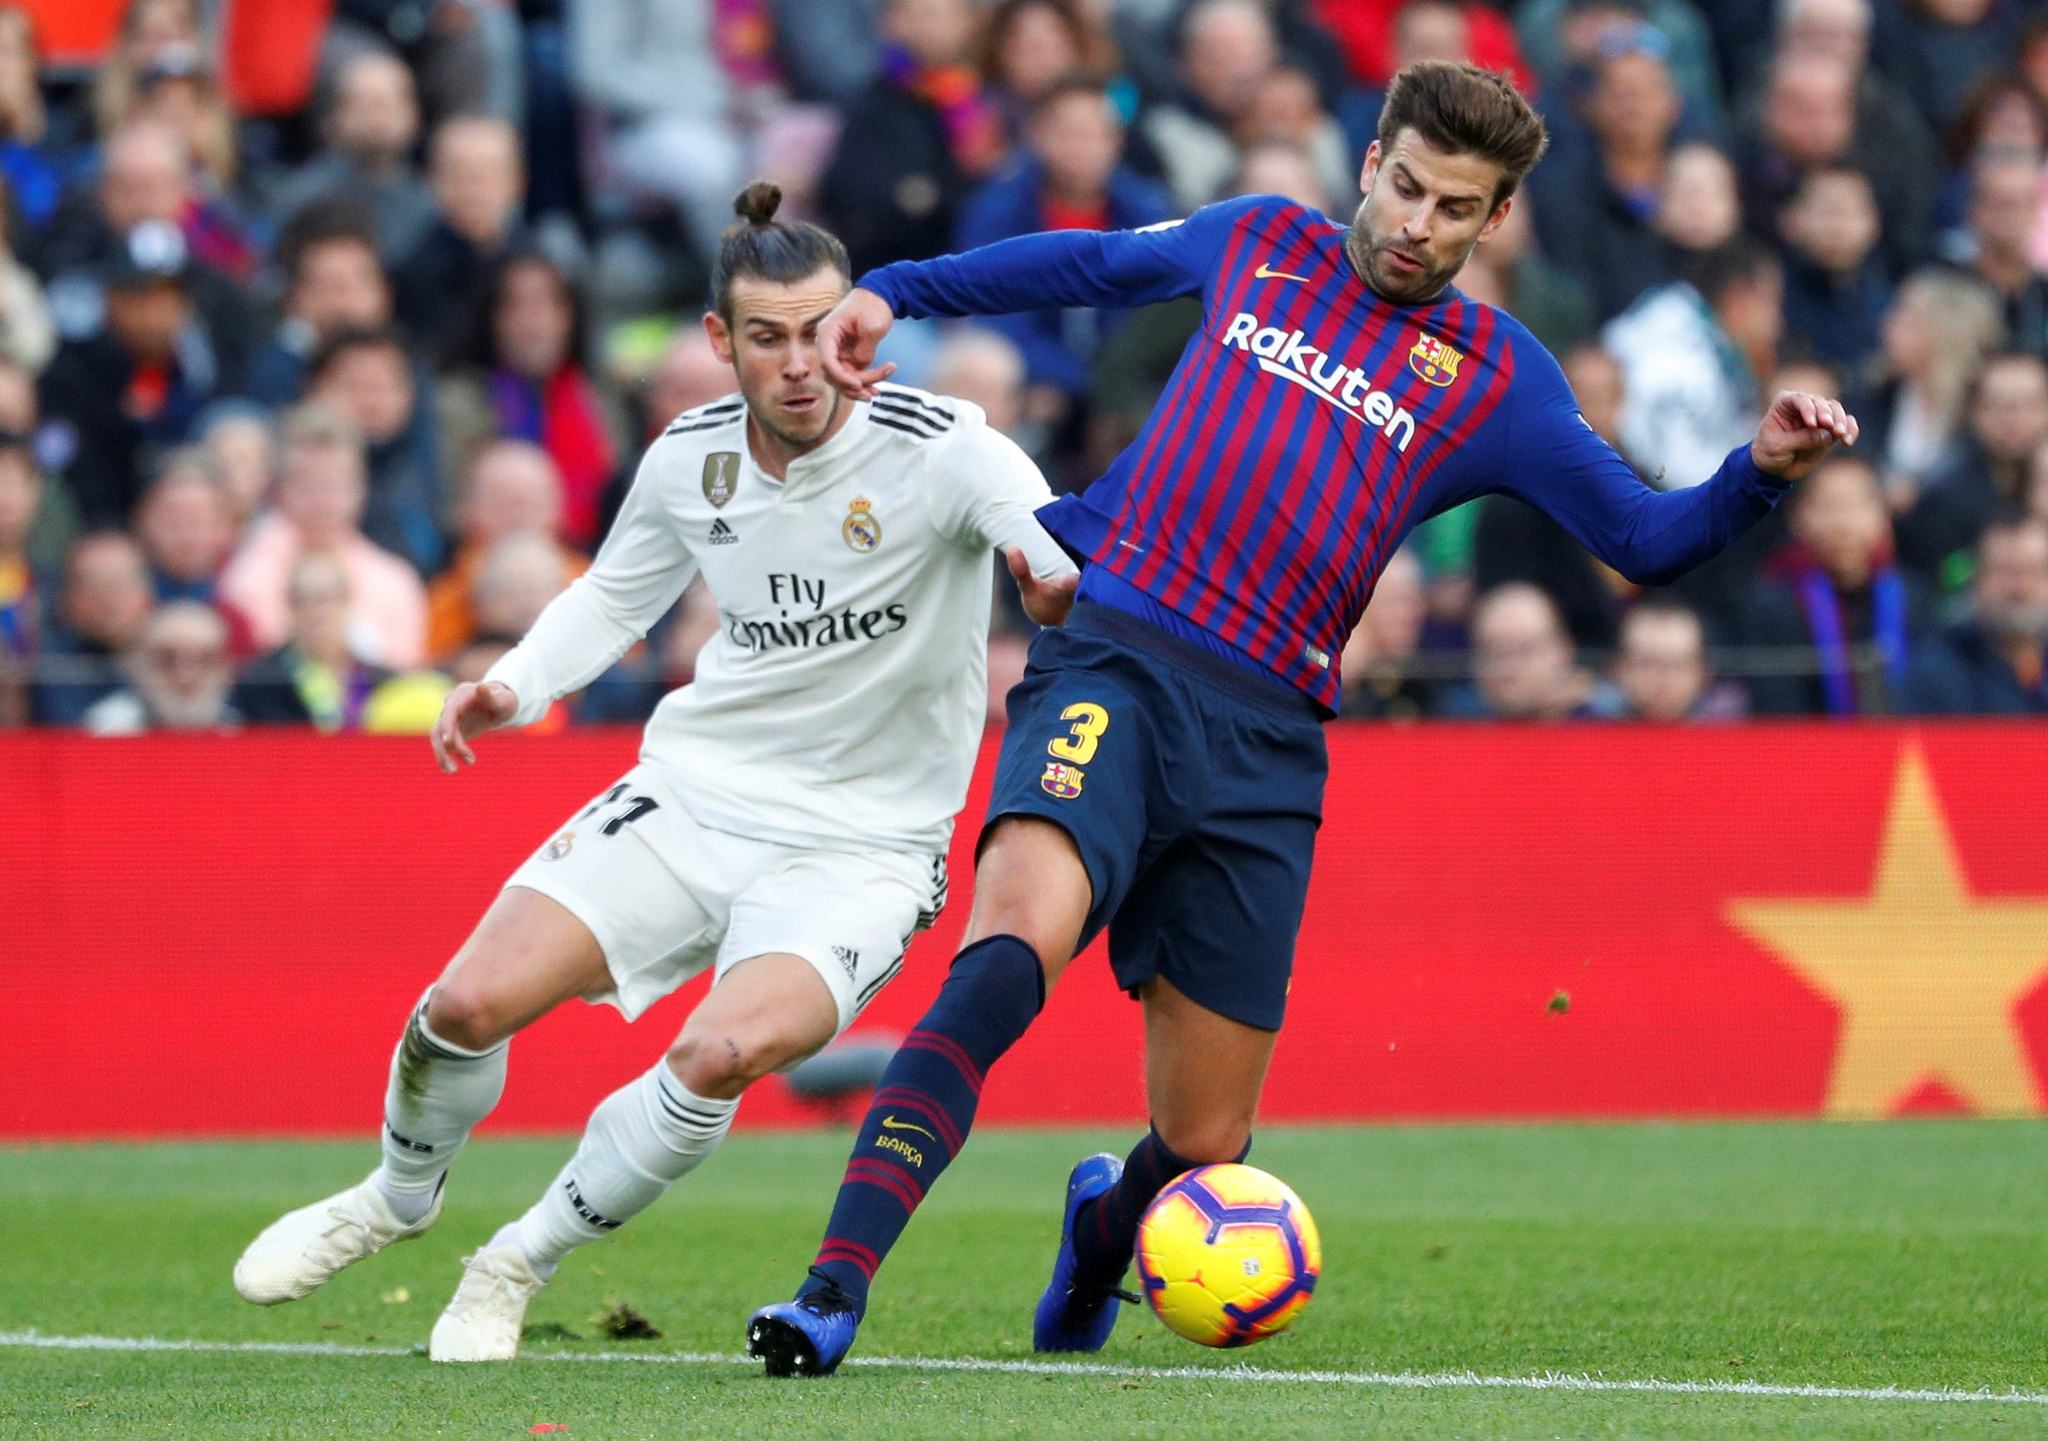 El Clasico: Barcelona vs Real Madrid Preview